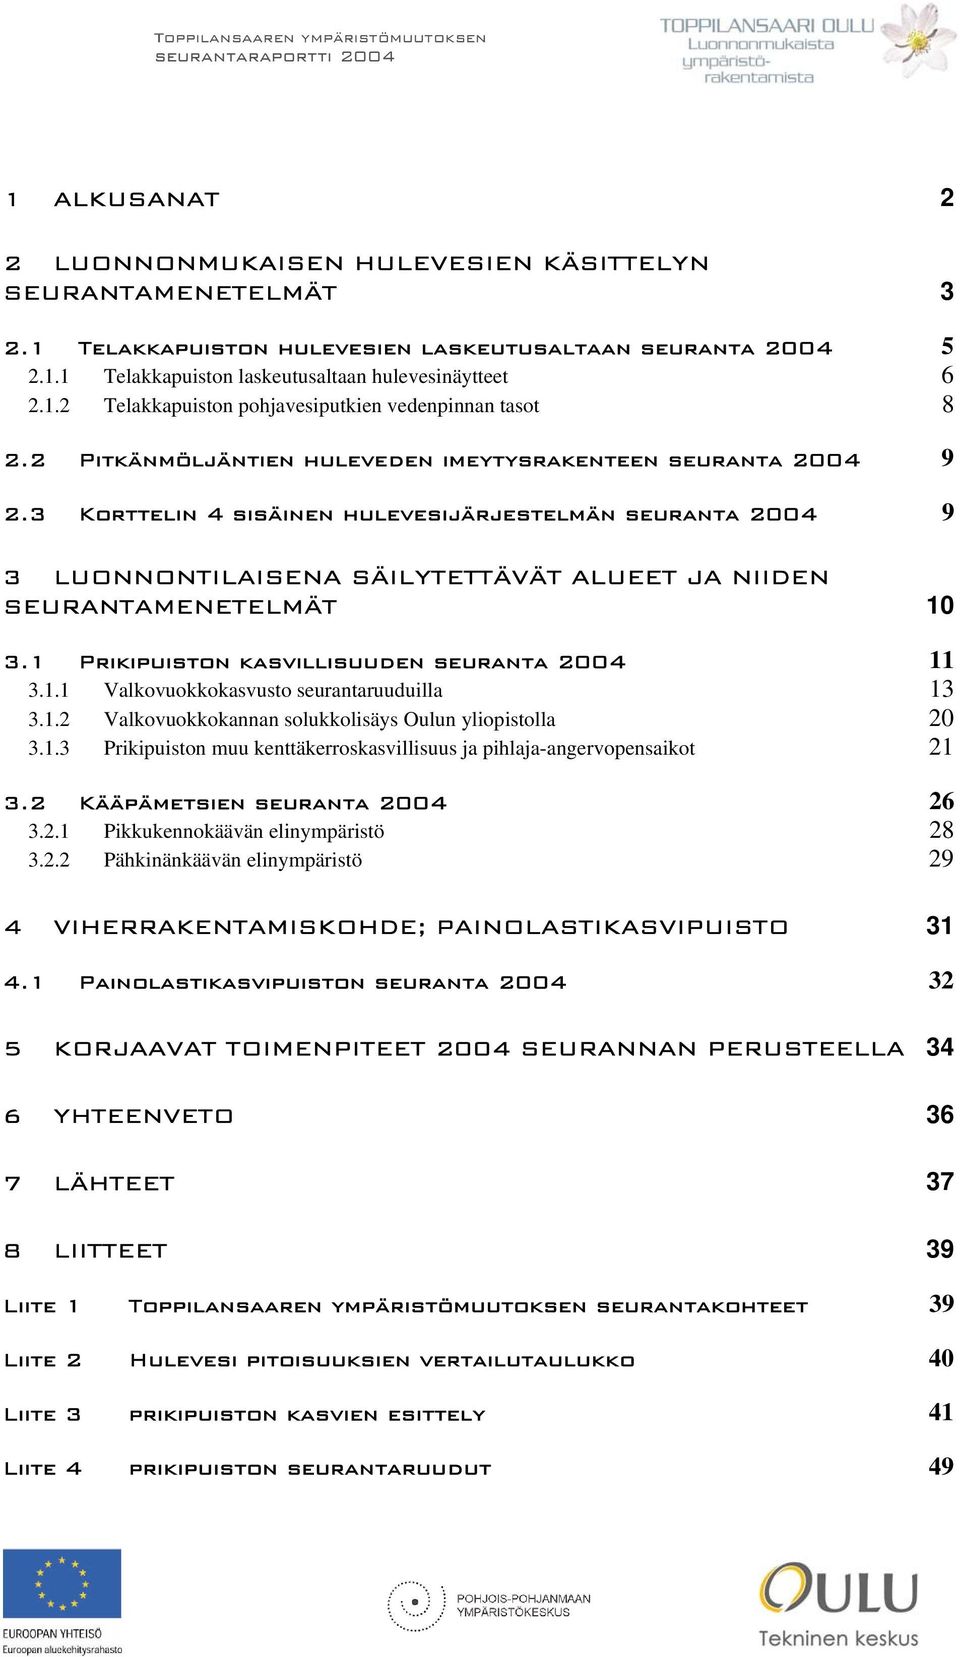 1 Prikipuiston kasvillisuuden seuranta 2004 11 3.1.1 Valkovuokkokasvusto seurantaruuduilla 13 3.1.2 Valkovuokkokannan solukkolisäys Oulun yliopistolla 20 3.1.3 Prikipuiston muu kenttäkerroskasvillisuus ja pihlaja-angervopensaikot 21 3.